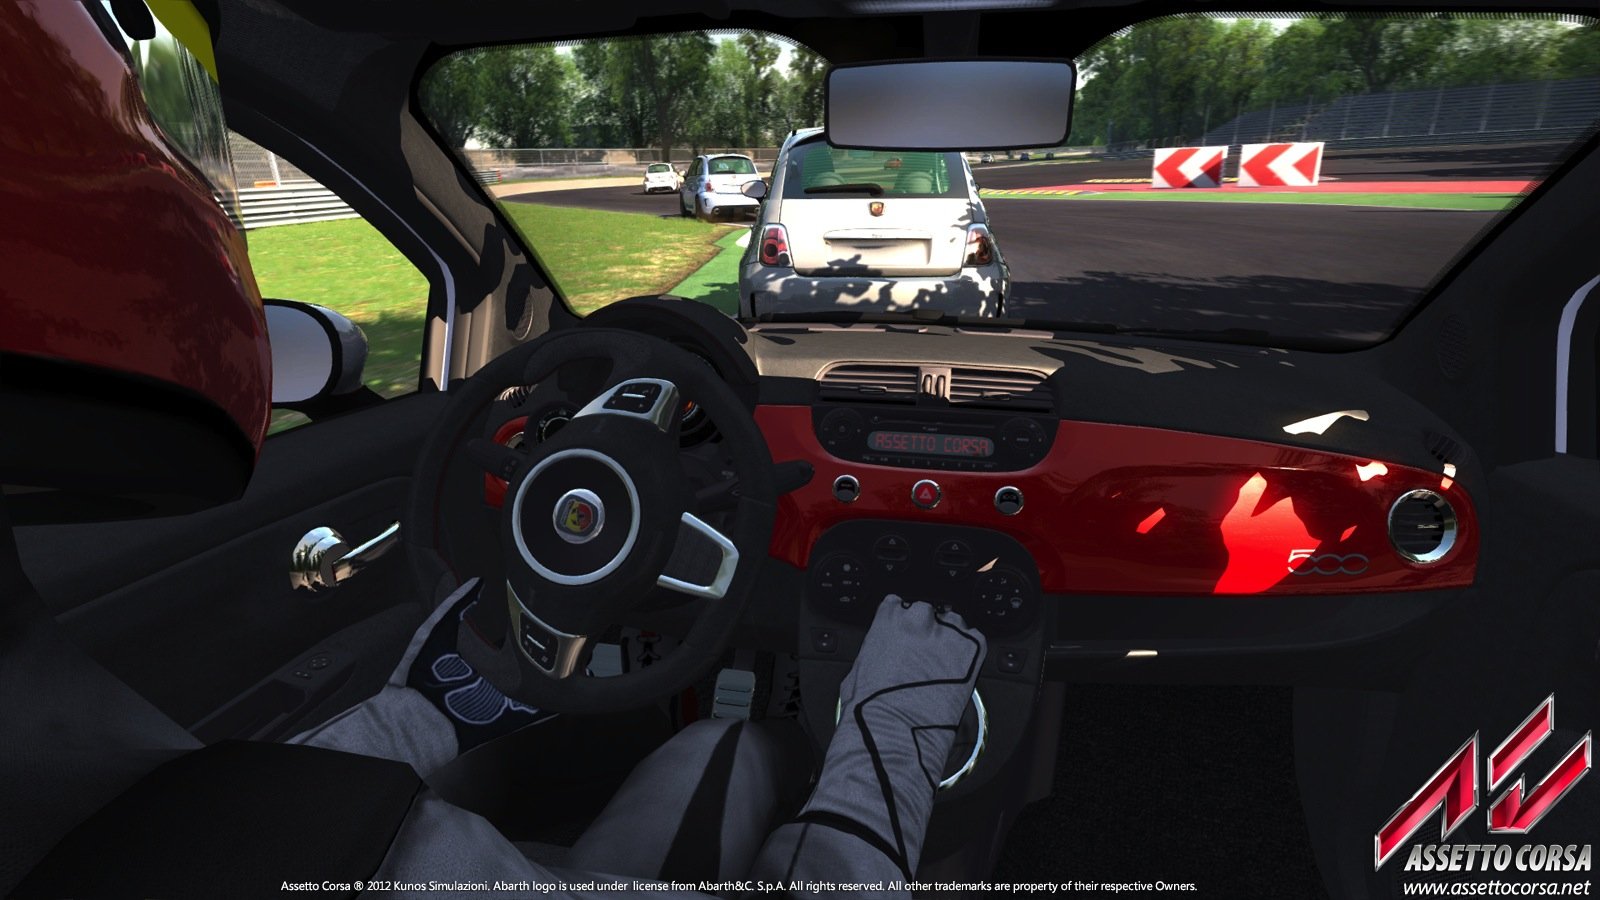 More information about "Assetto Corsa: guida completa alla VR (con Oculus Rift e non solo)"